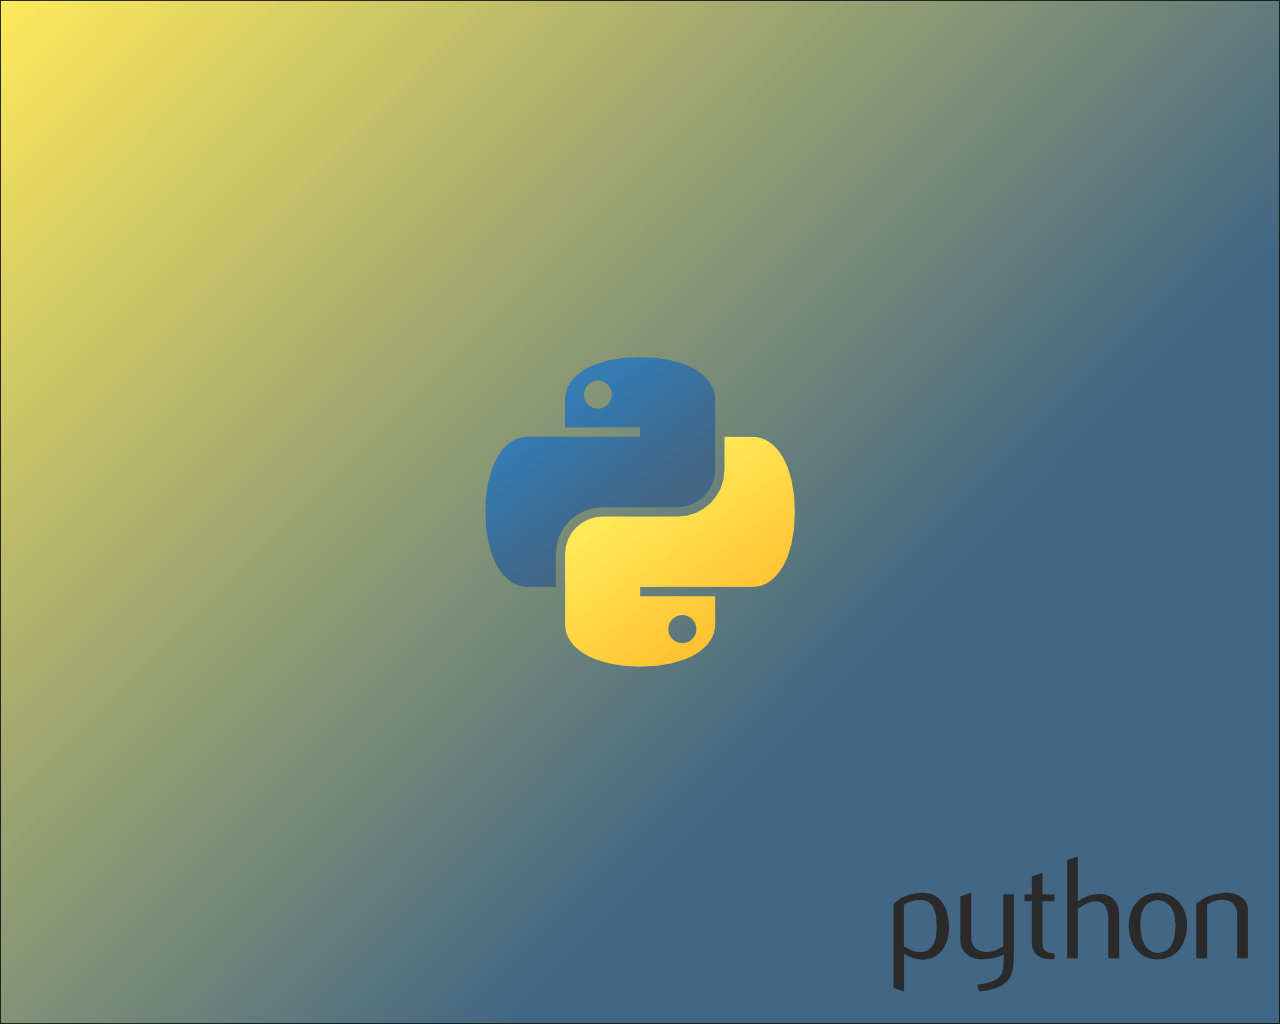 Python Wallpaper. Python Wallpaper, Python Snake Wallpaper and Python Script Wallpaper